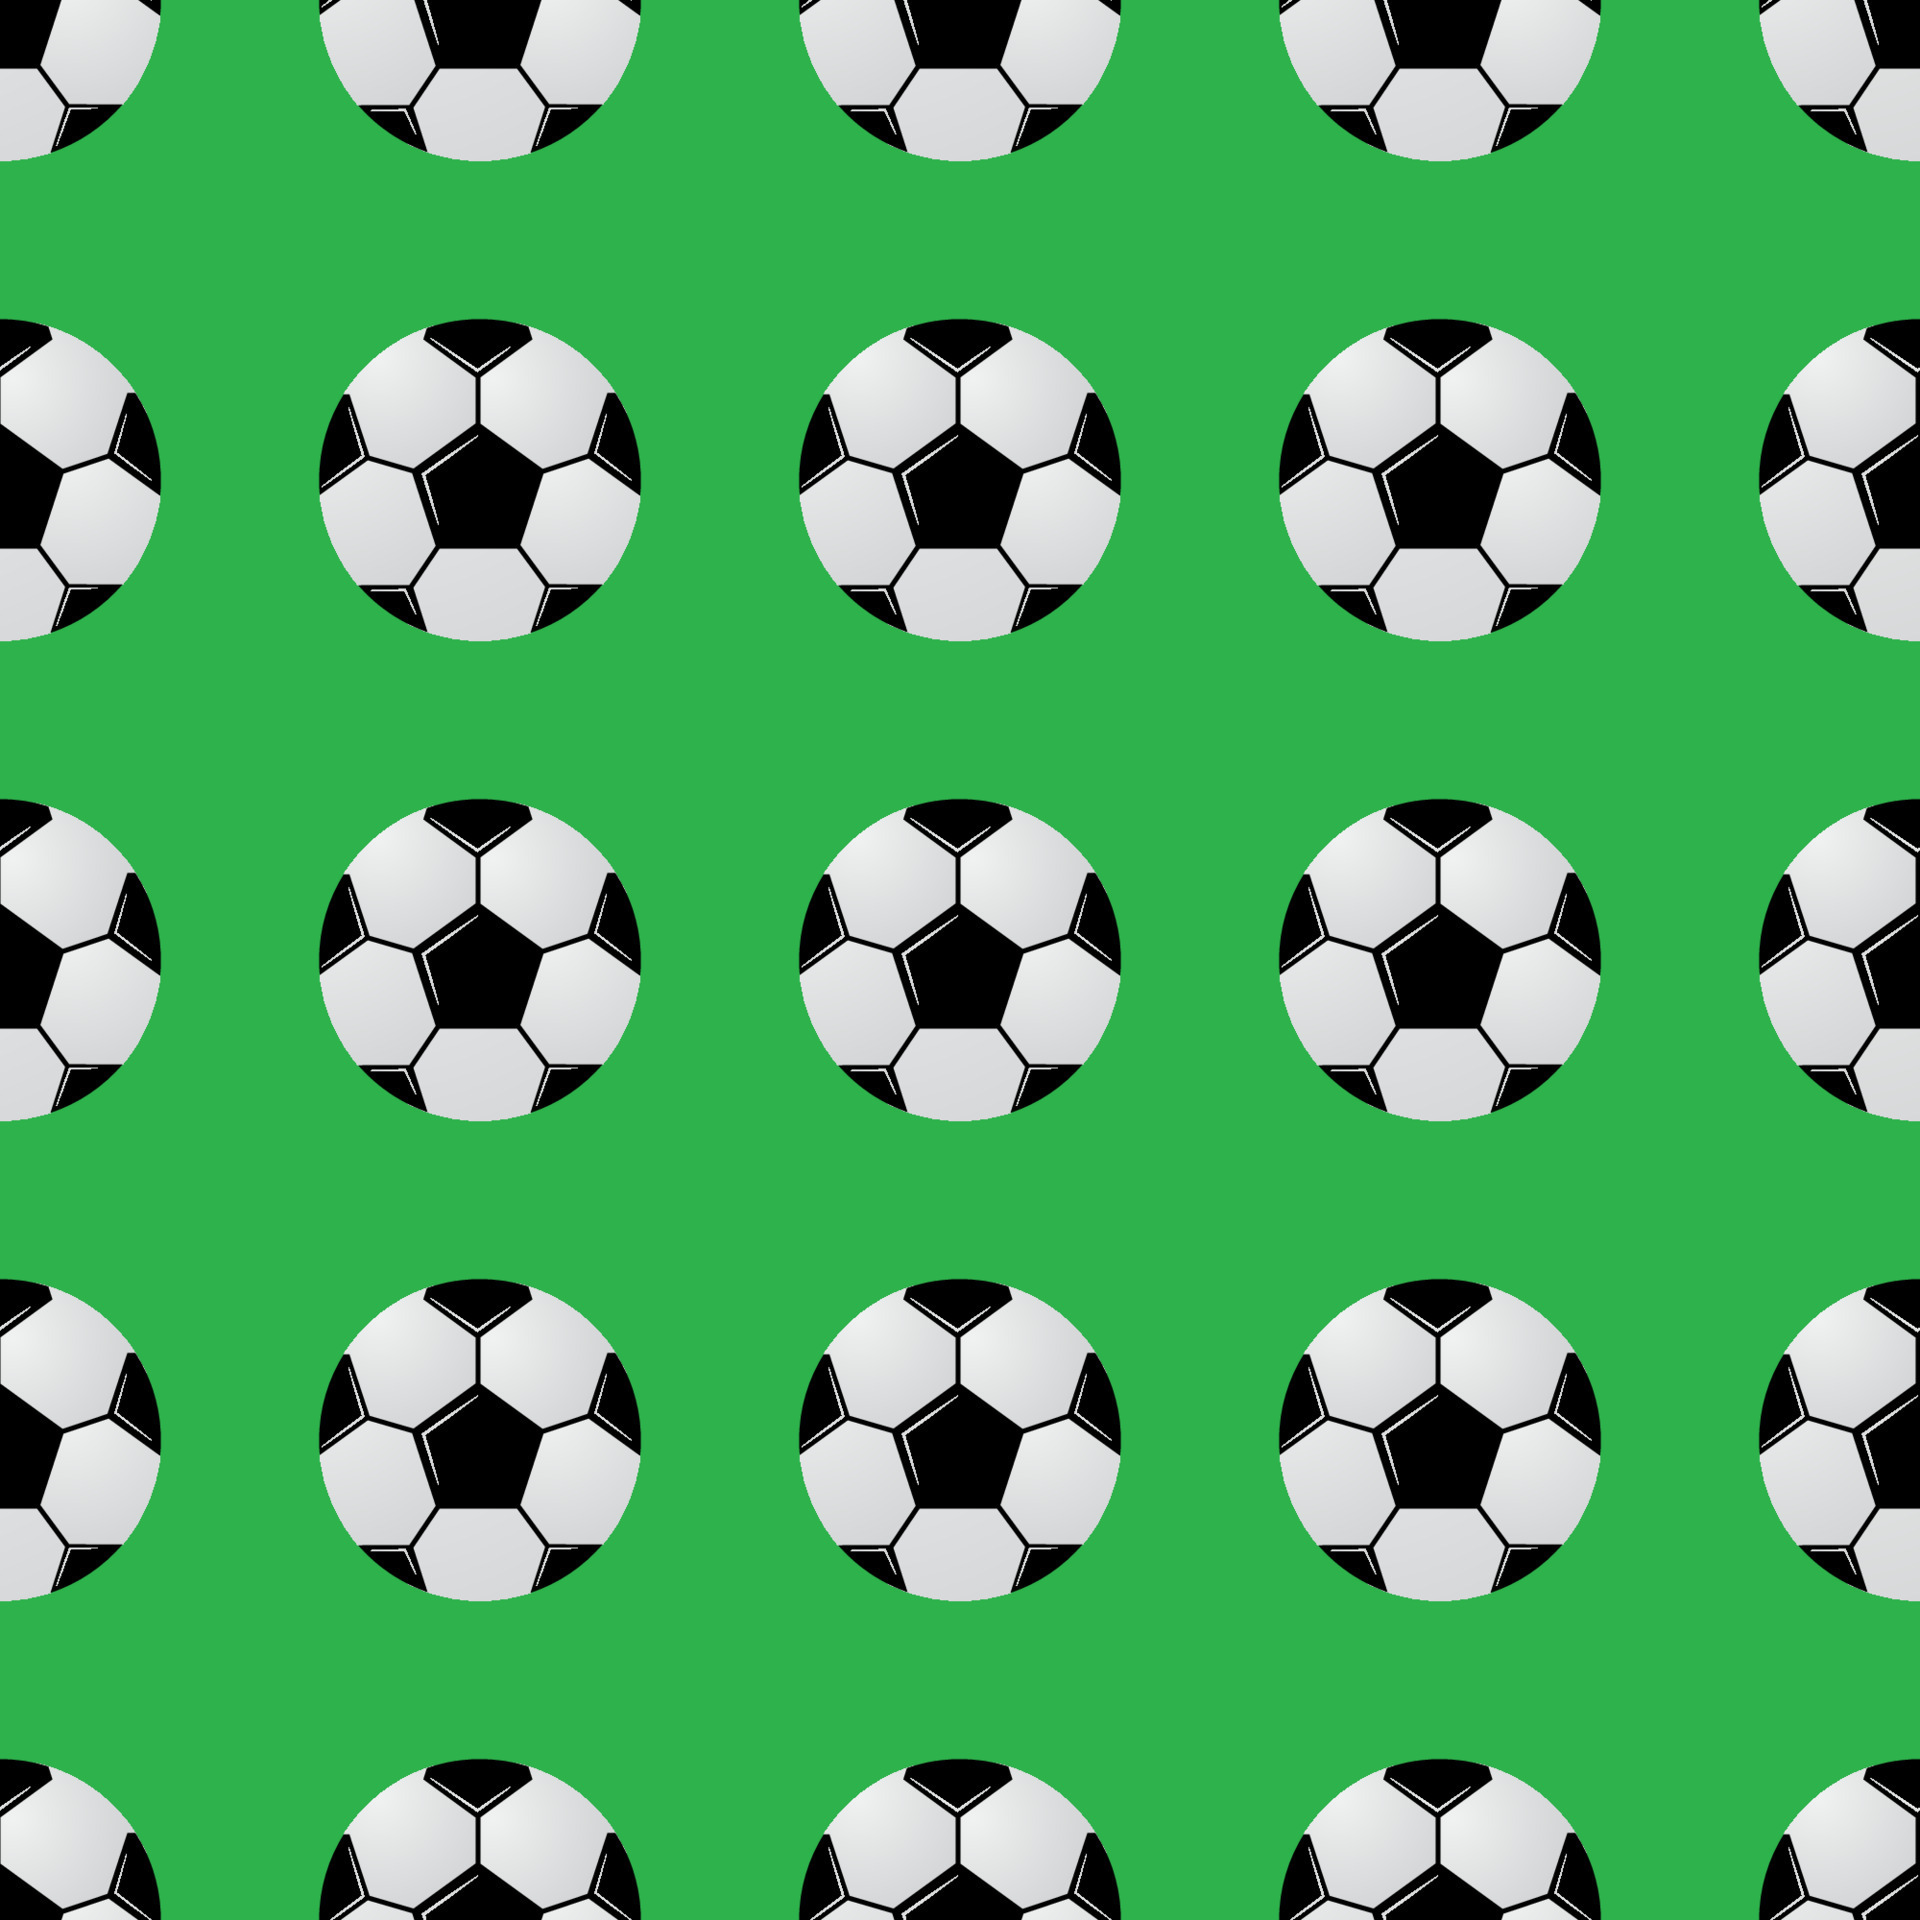 balones de fútbol en blanco y negro sobre un patrón verde sin fisuras.  Fondo de vector de fútbol. ilustración de estilo de dibujos animados de  tema de competición deportiva. plantilla fácil de